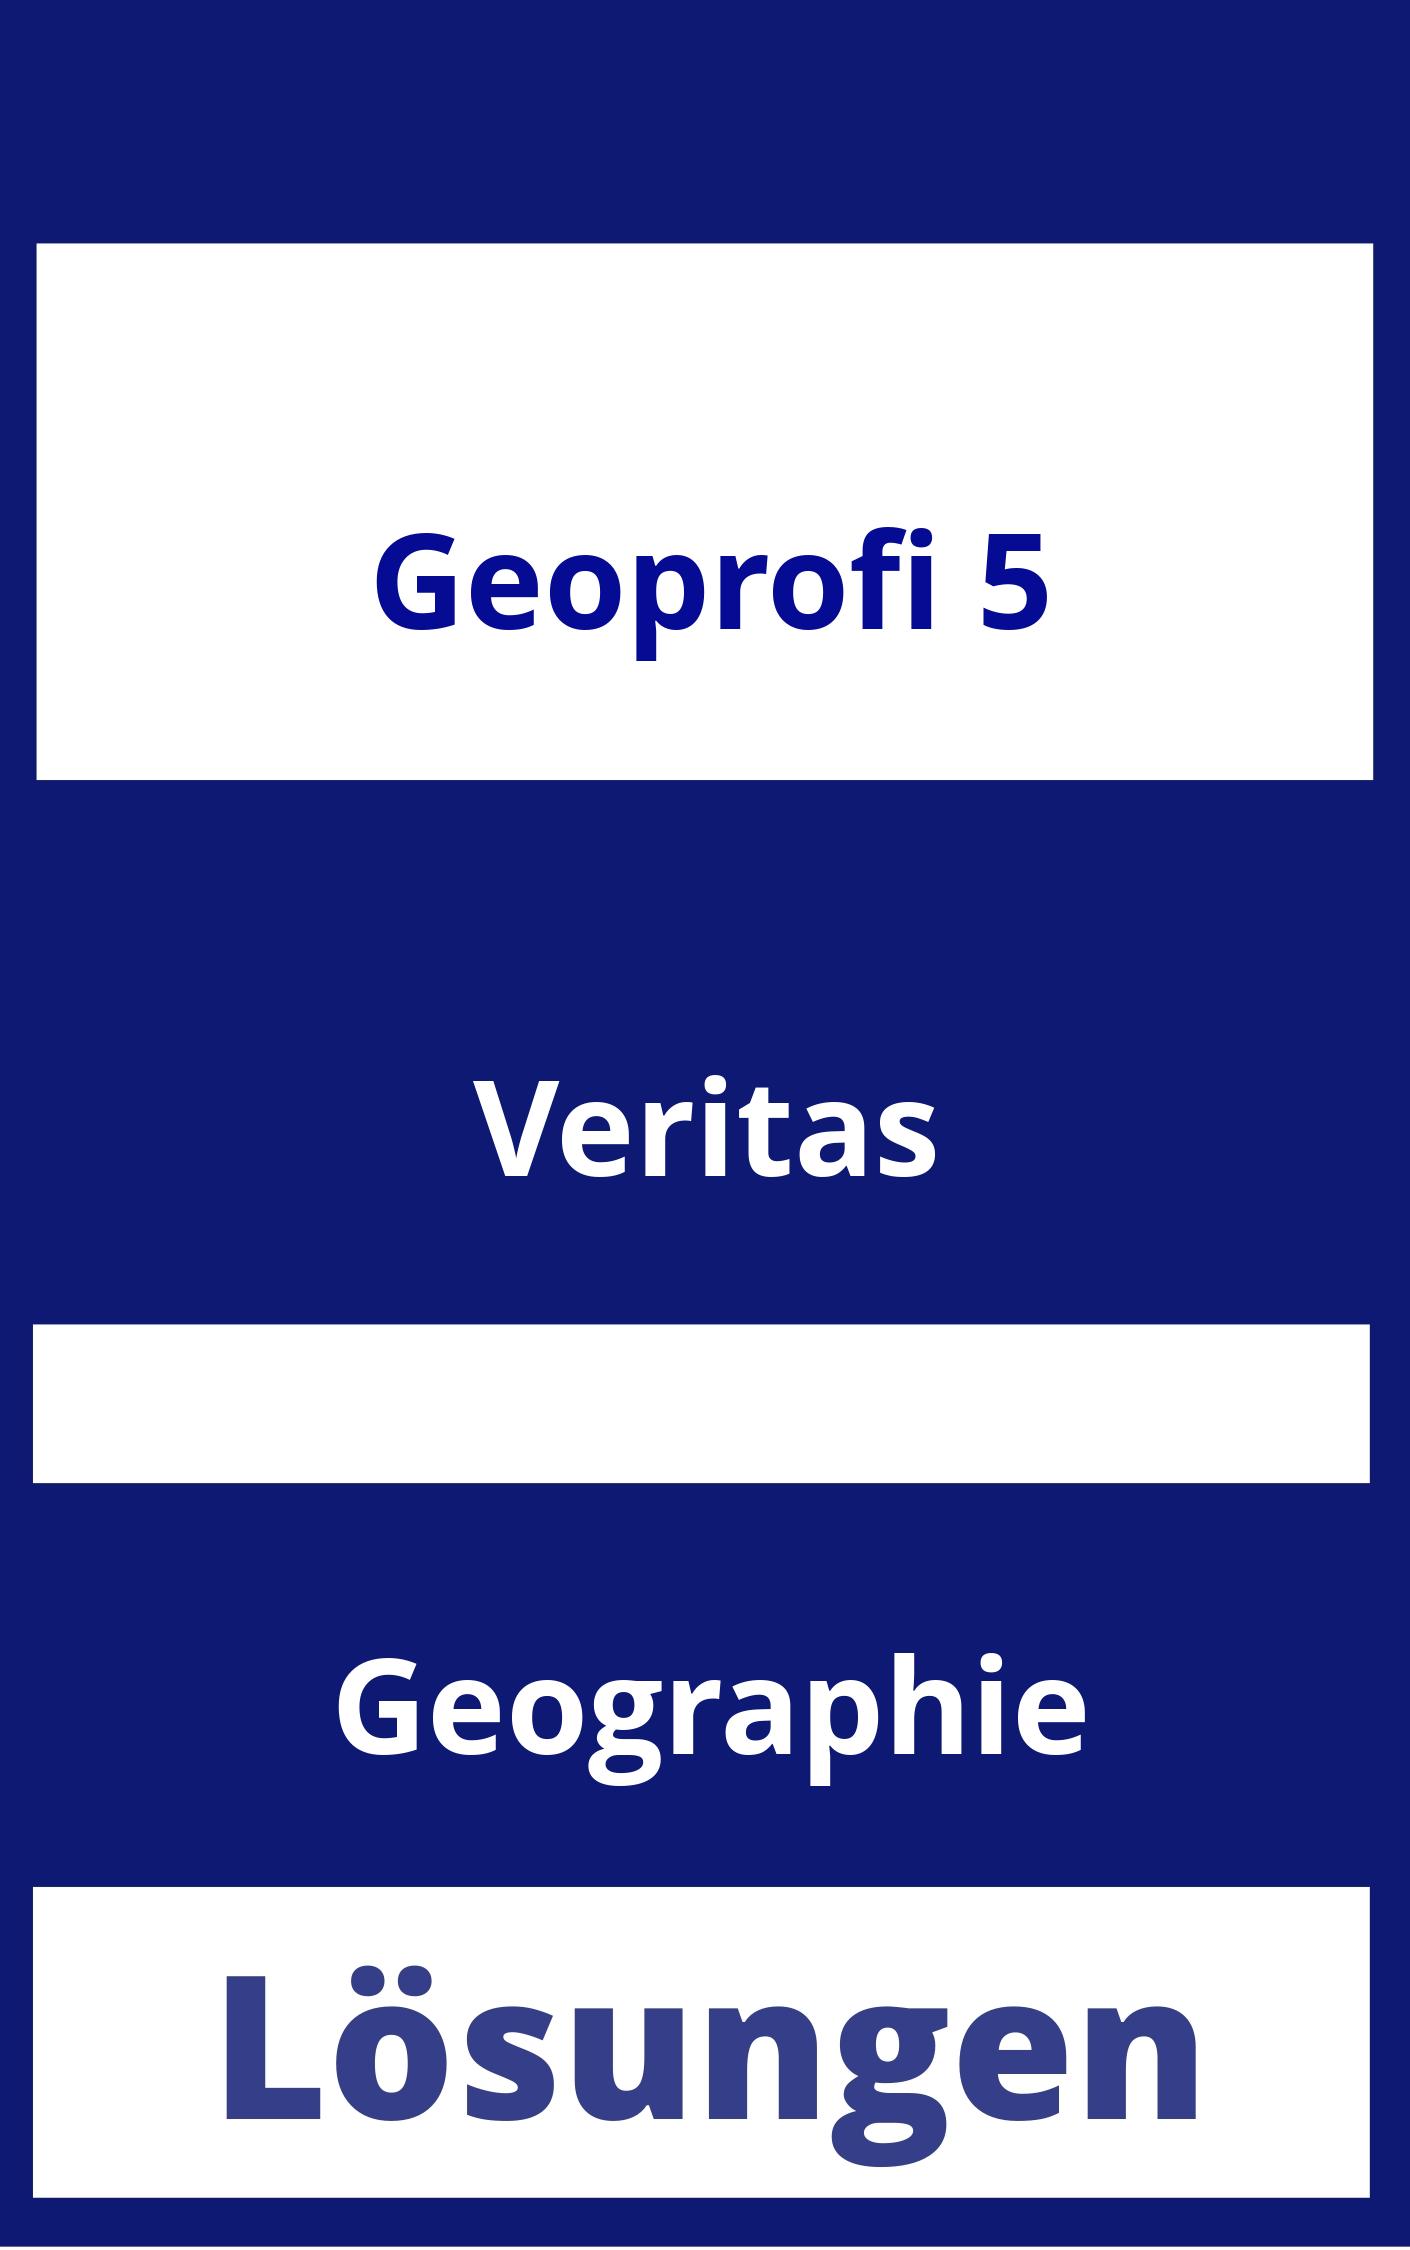 GEOprofi 5